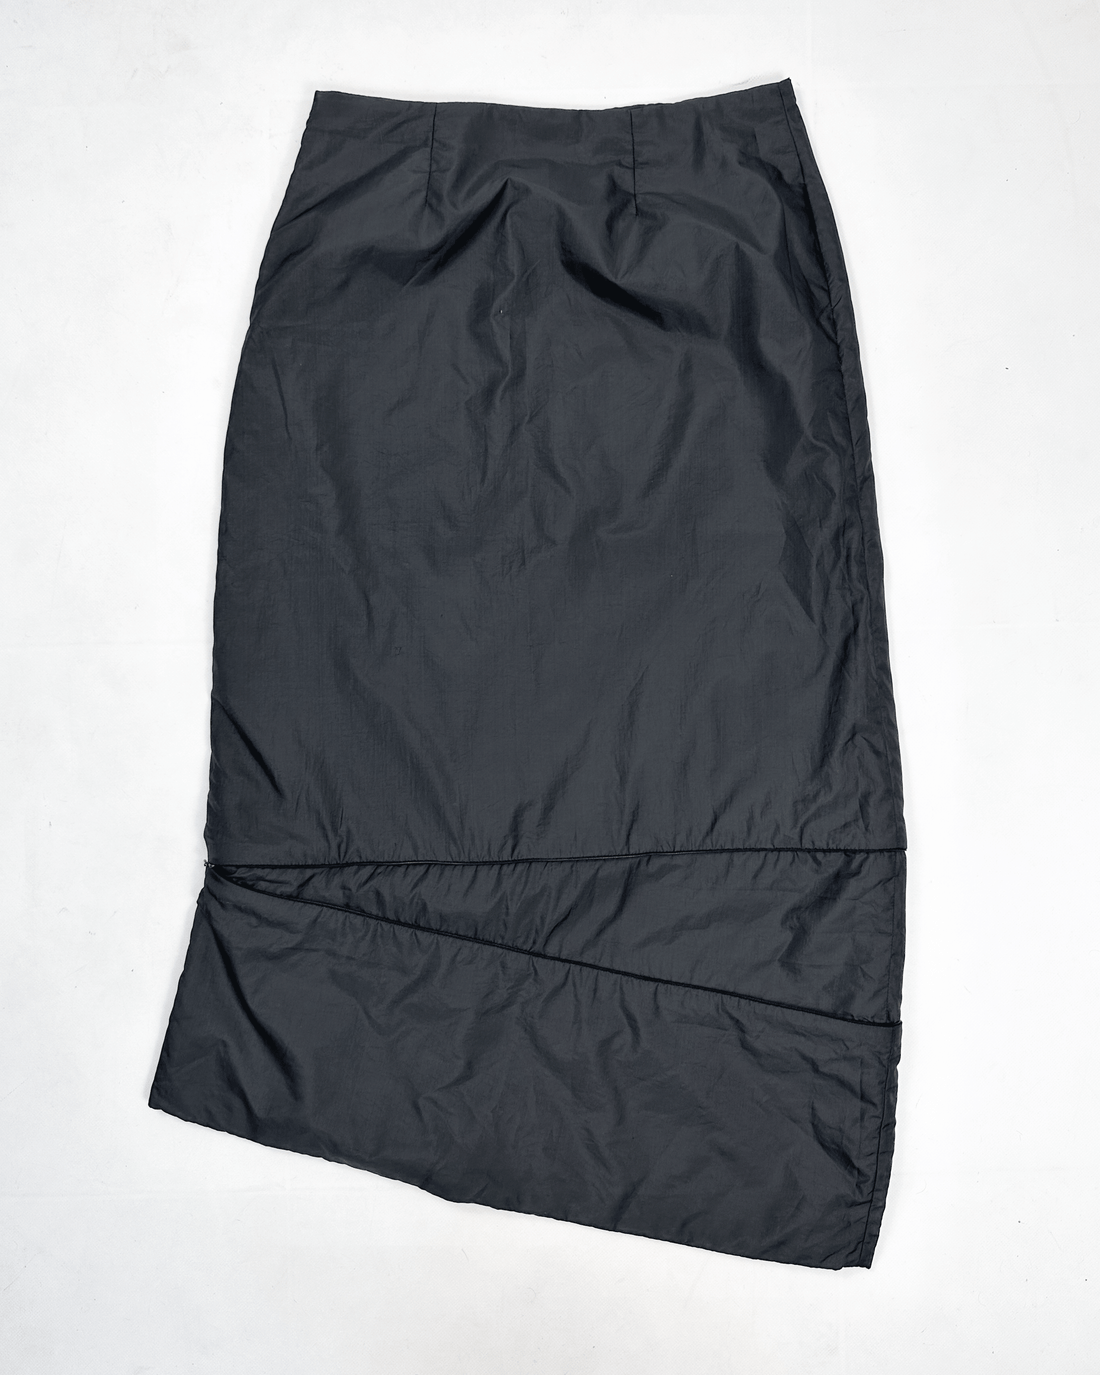 Sarah Paccini Convertible Maxi Skirt 2000's